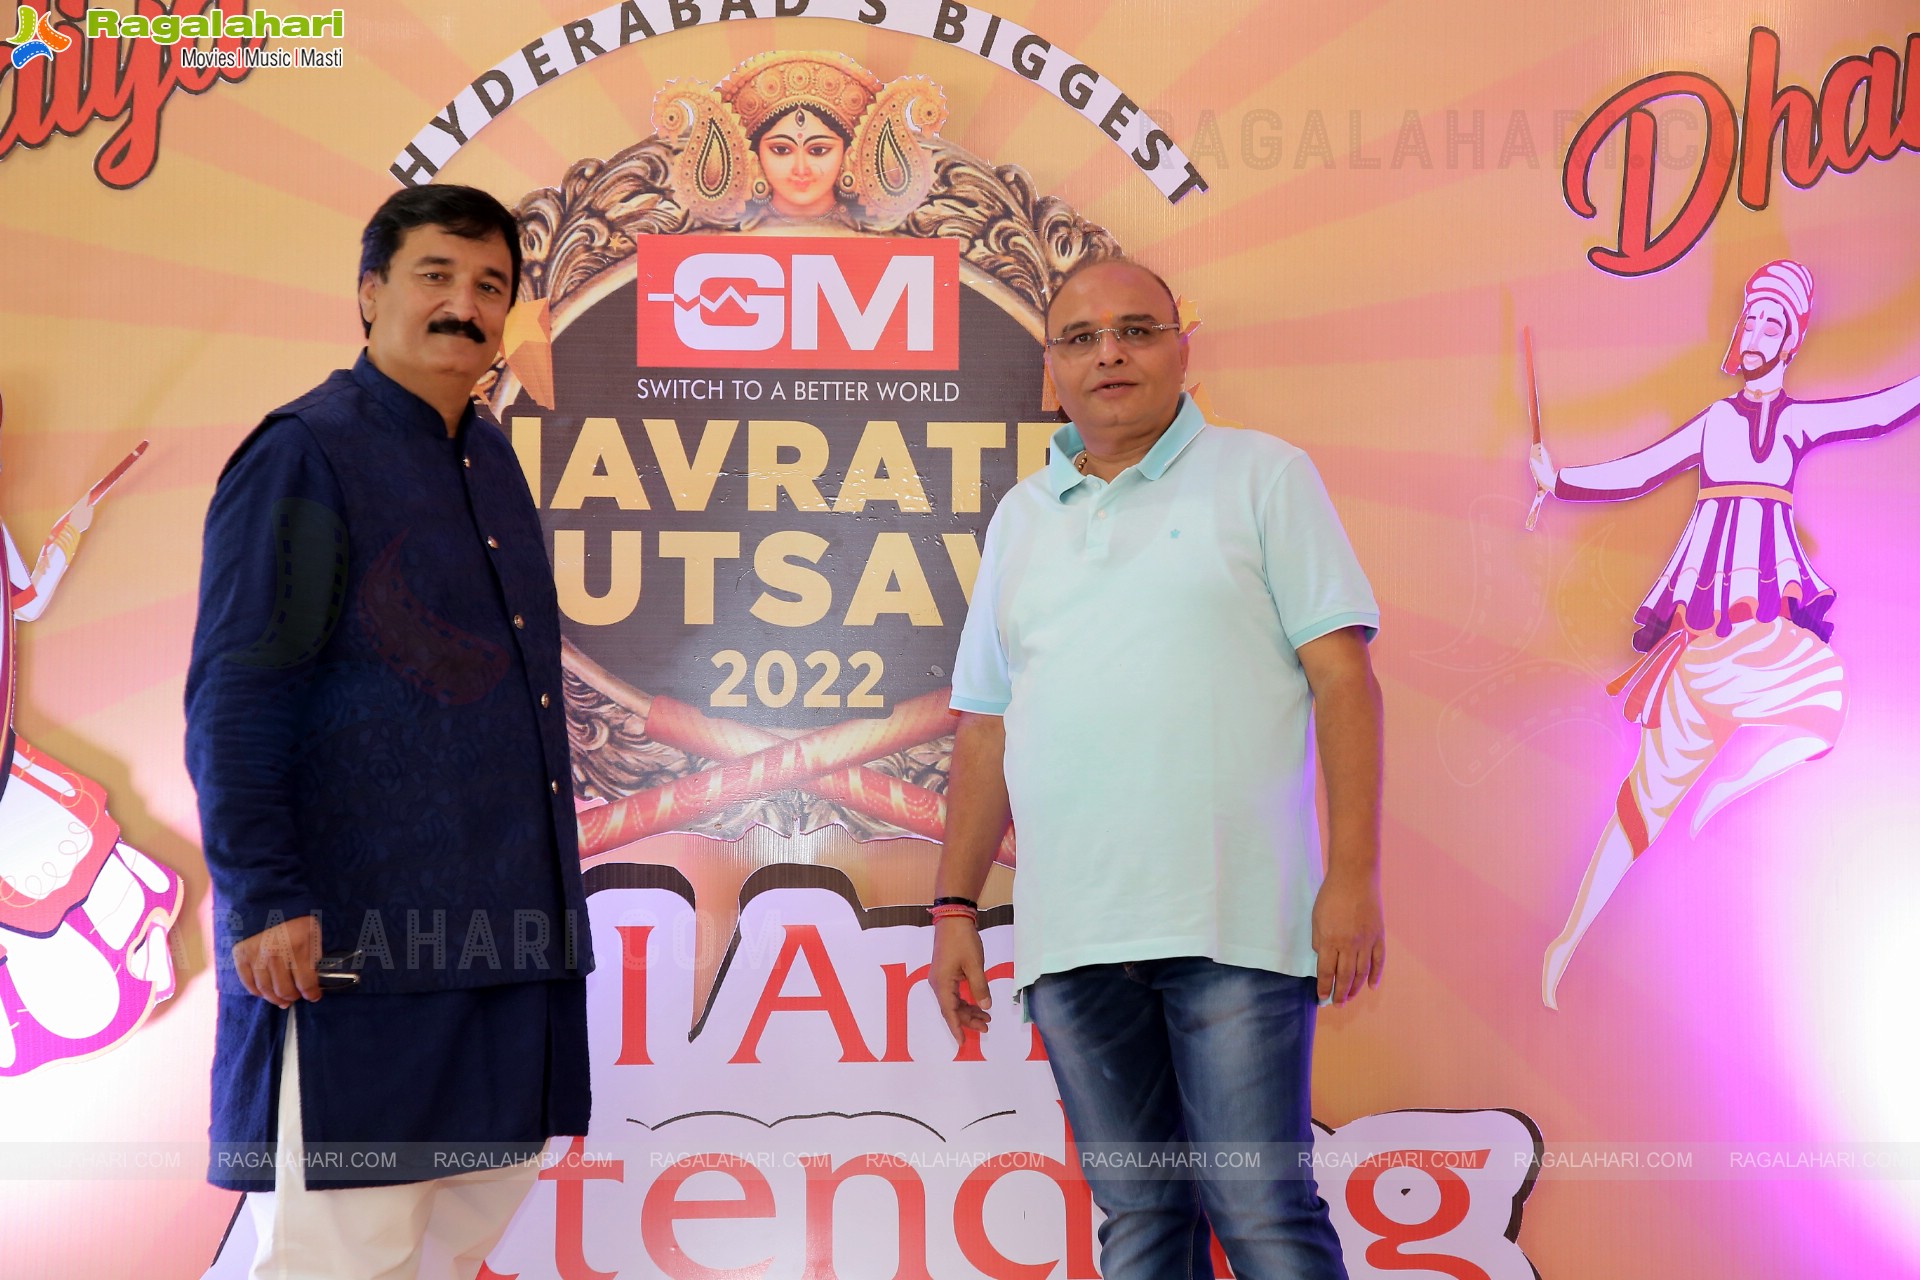 Navratri Utsav 2022 'Dandia Dhamal' Ticket Launch Announcement